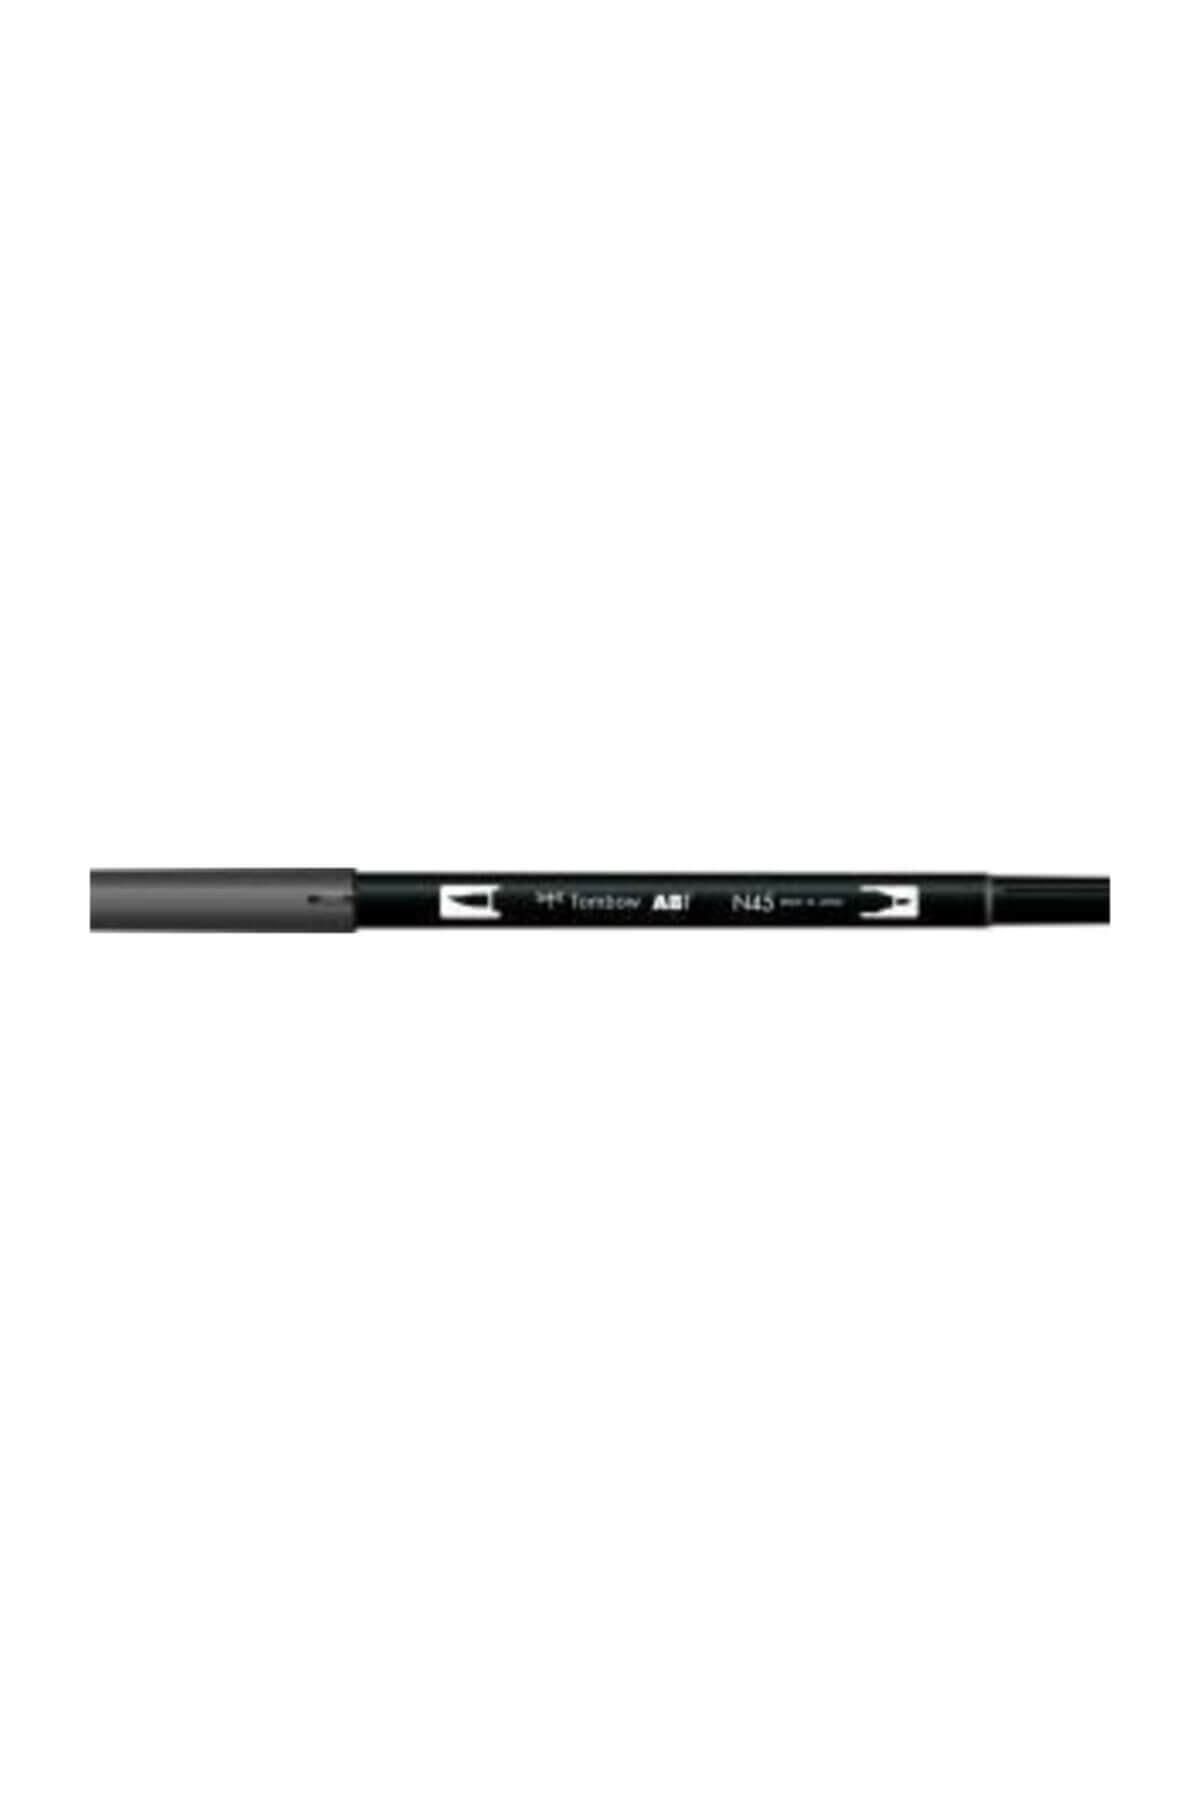 Tombow Ab-t Dual Brush Pen Grafik Kalemi Cool Gray 10 N45